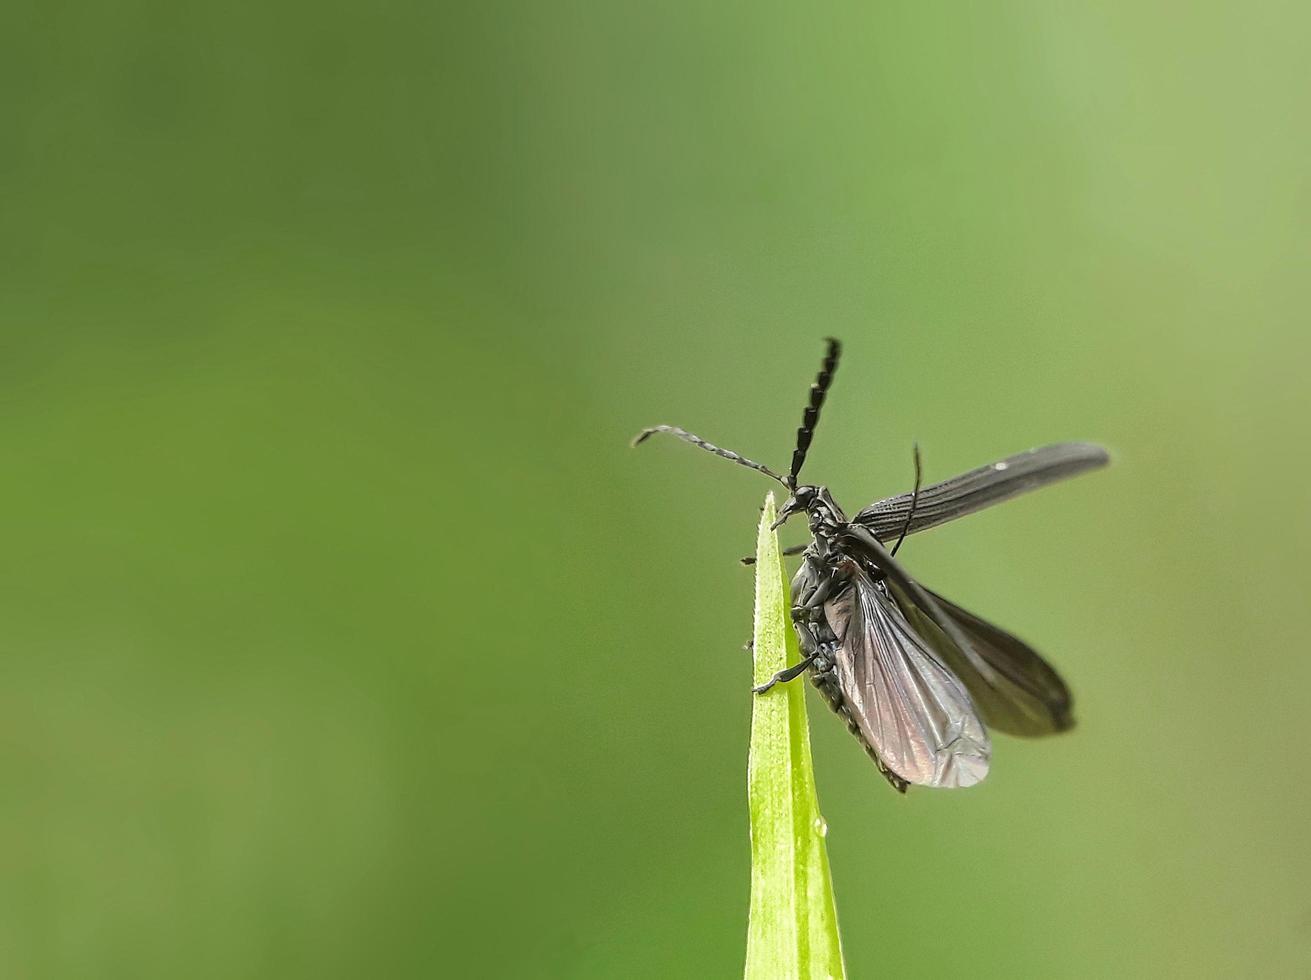 piccoli insetti neri si preparano a volare planate foto